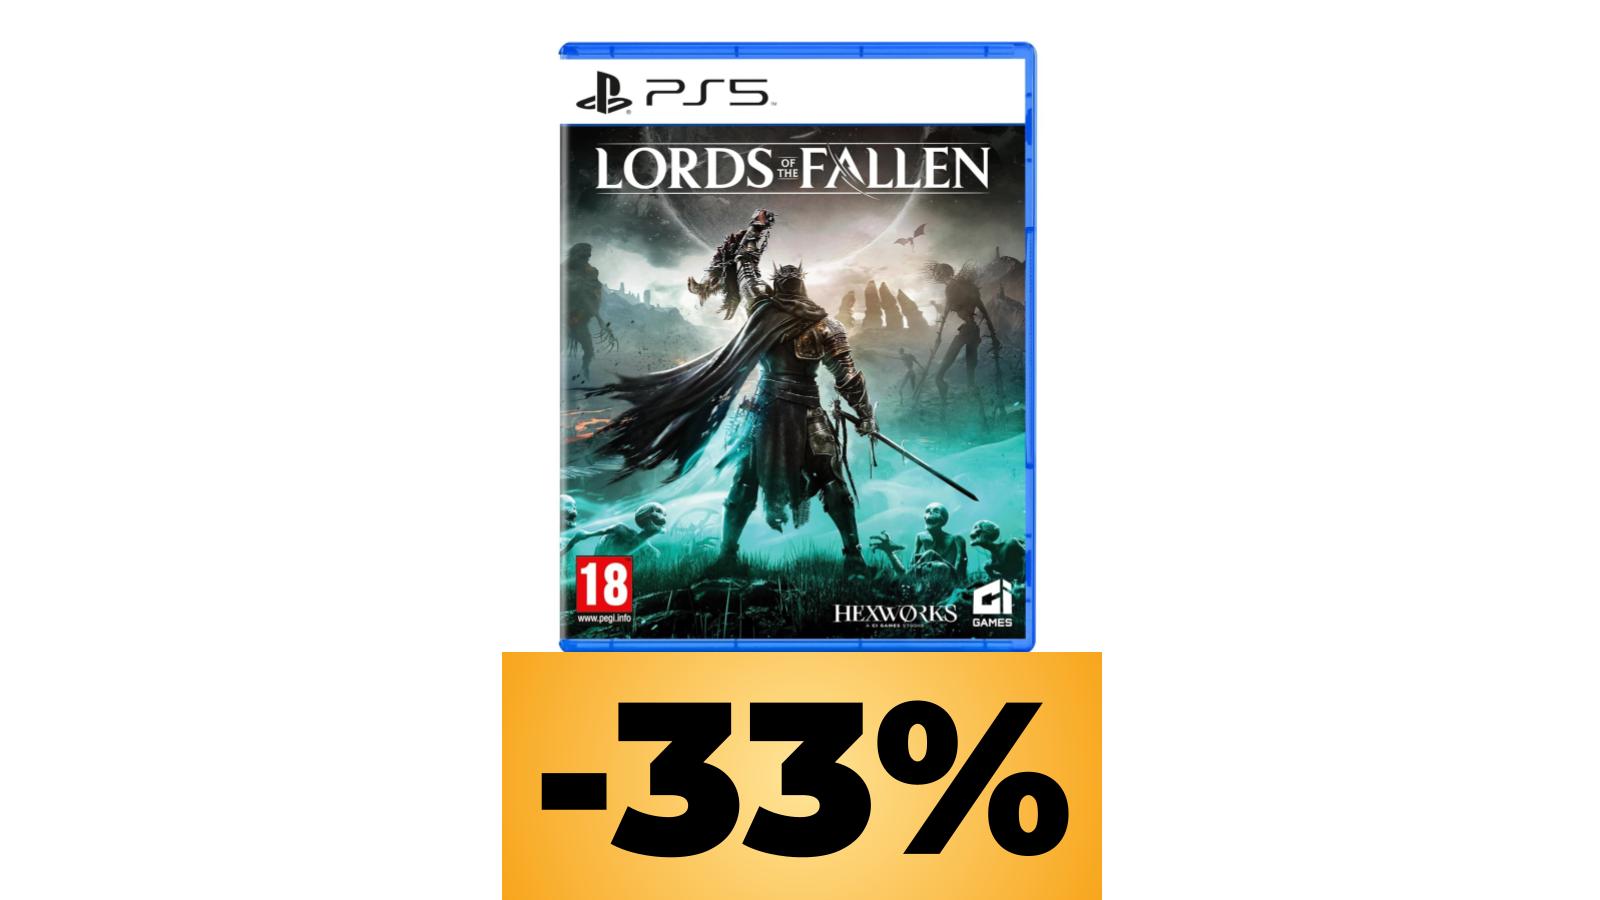 Lords of the Fallen al prezzo migliore di sempre grazie alle Offerte Amazon